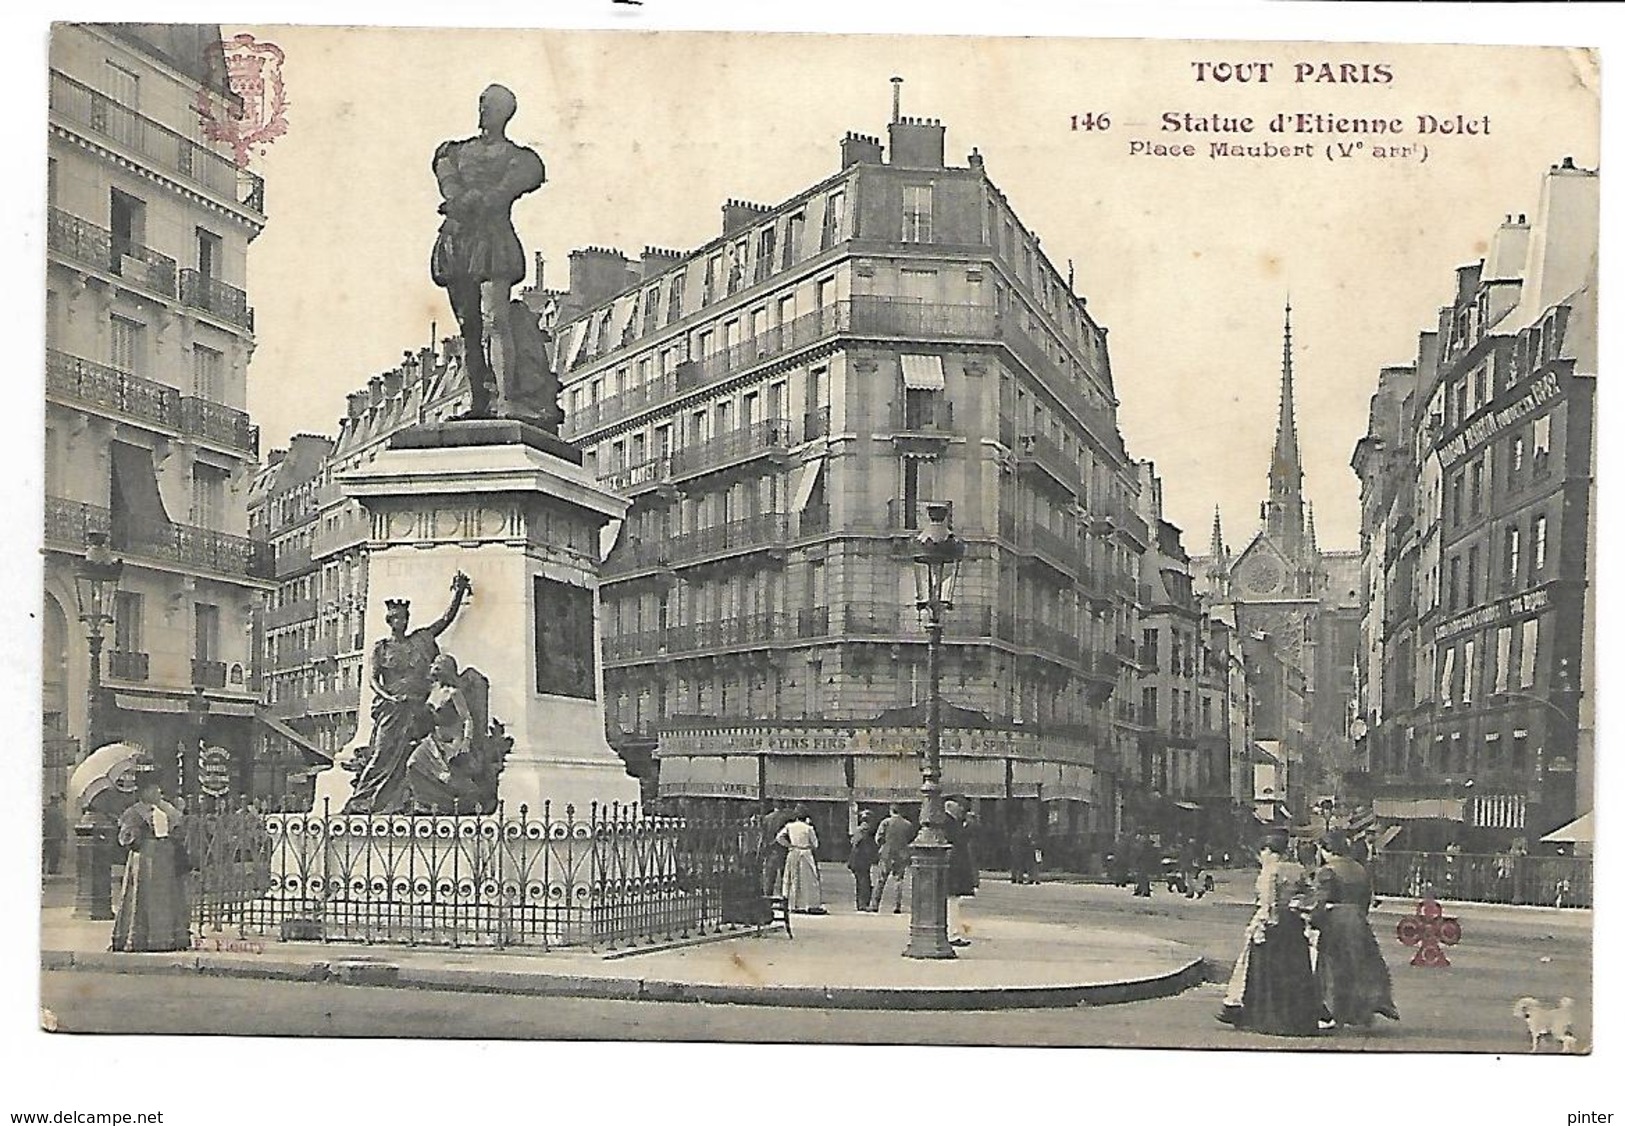 TOUT PARIS - 146 - Statut D'Etienne Dolet, Place Maubert - Arrondissement: 05